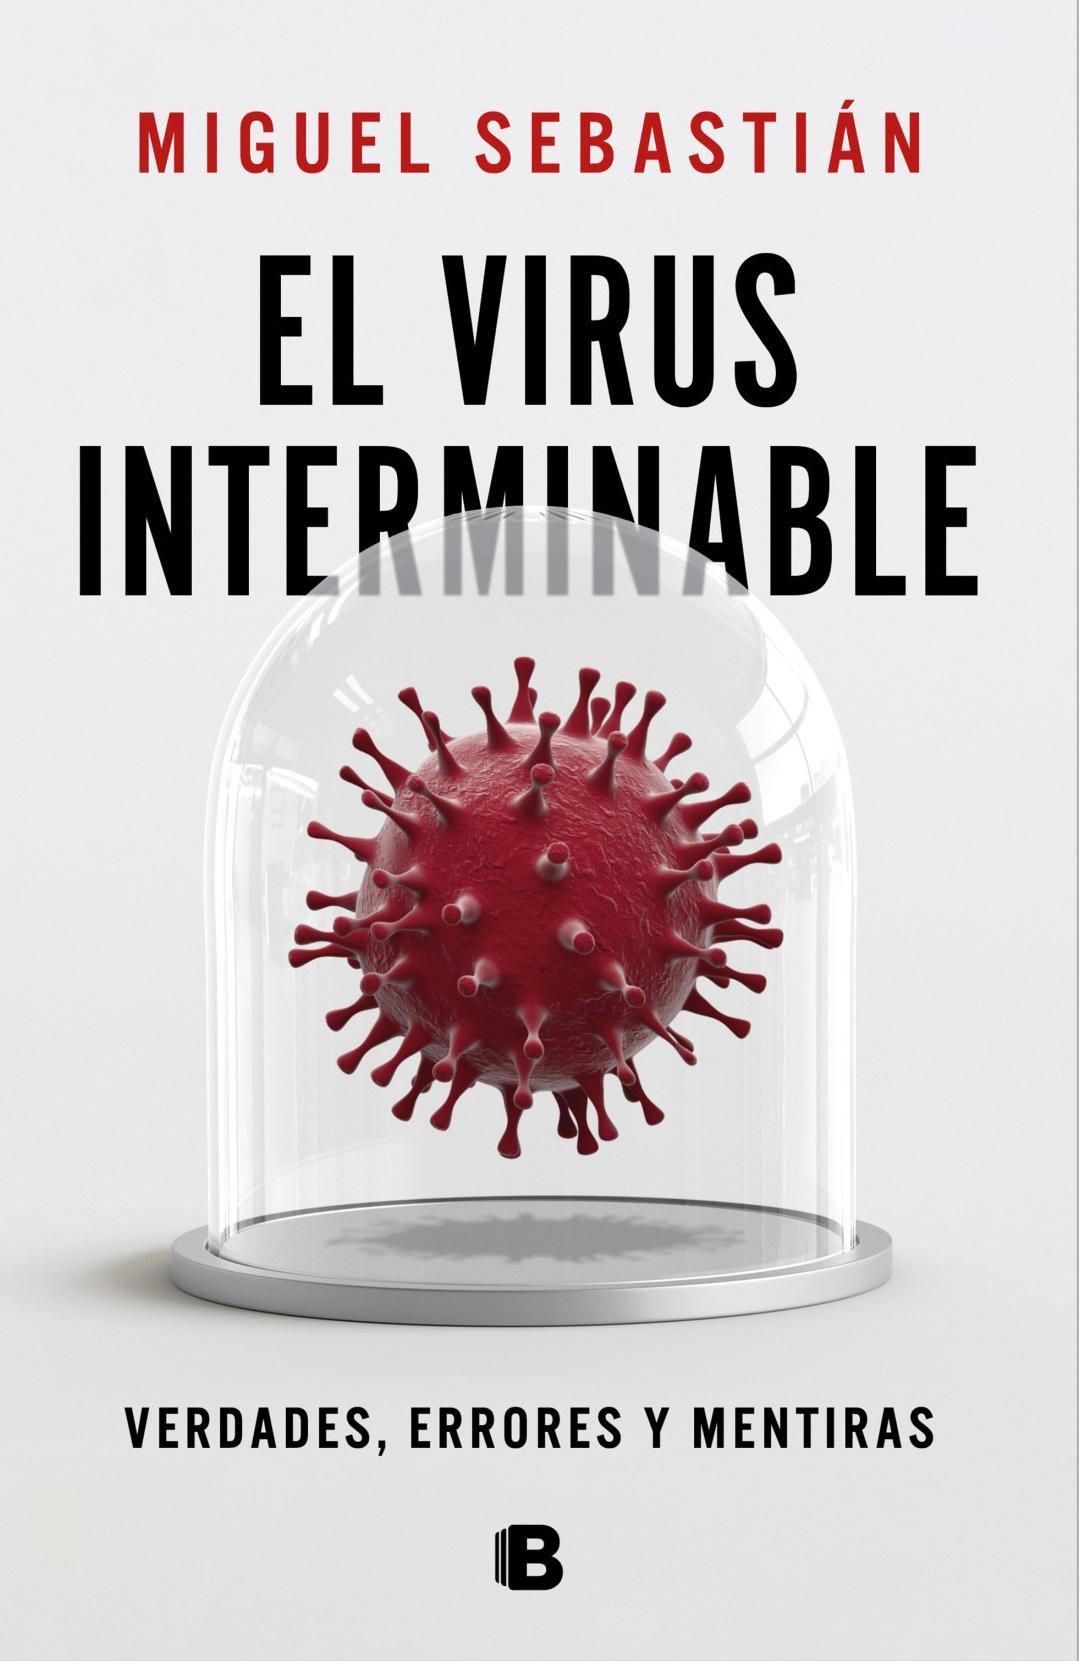 El Virus Interminable "Verdades, Errores y Mentiras"